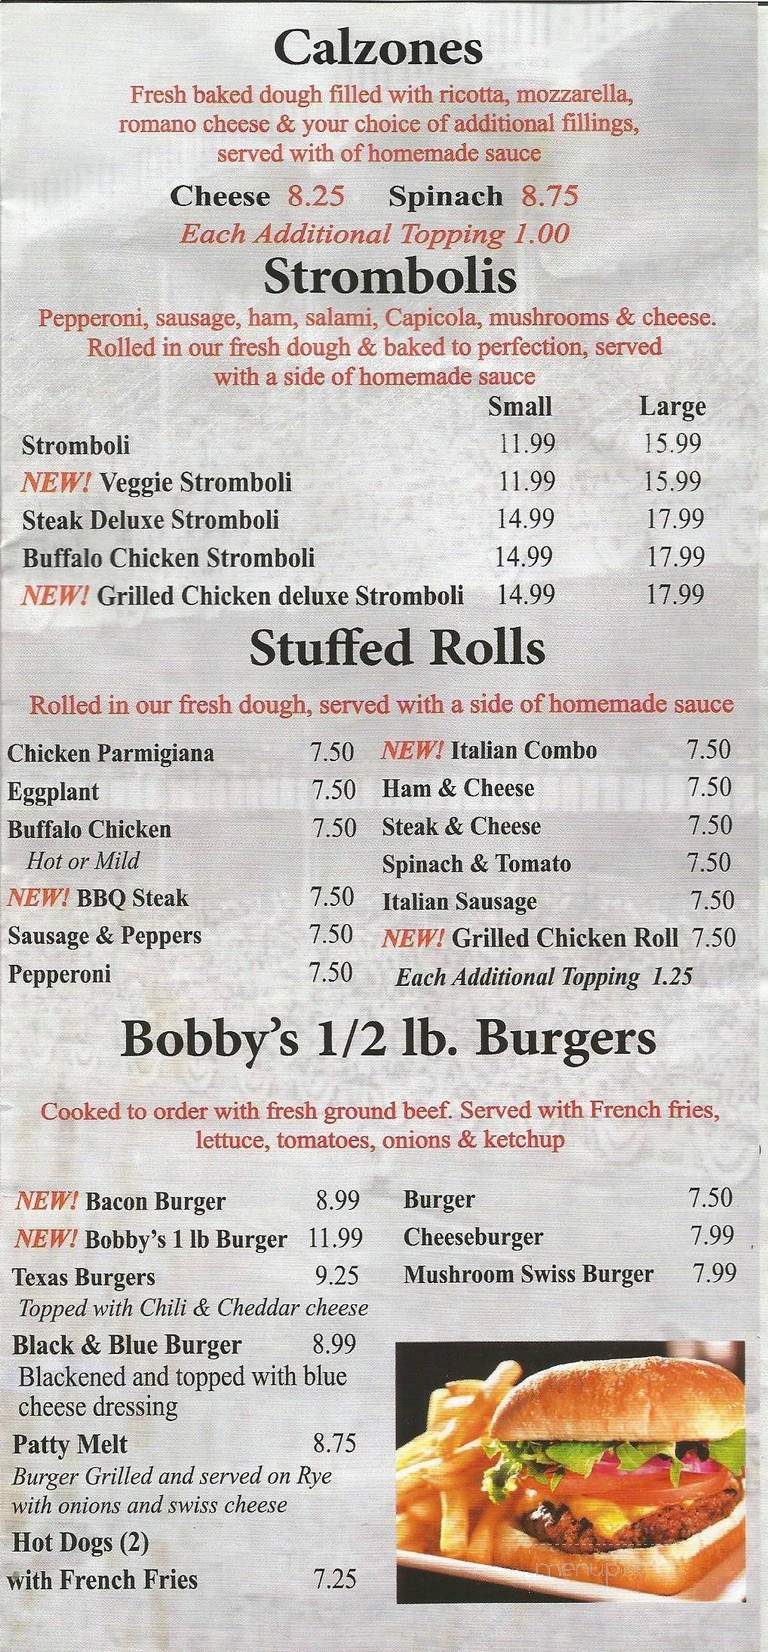 Bobby's Pizza - Port St Lucie, FL